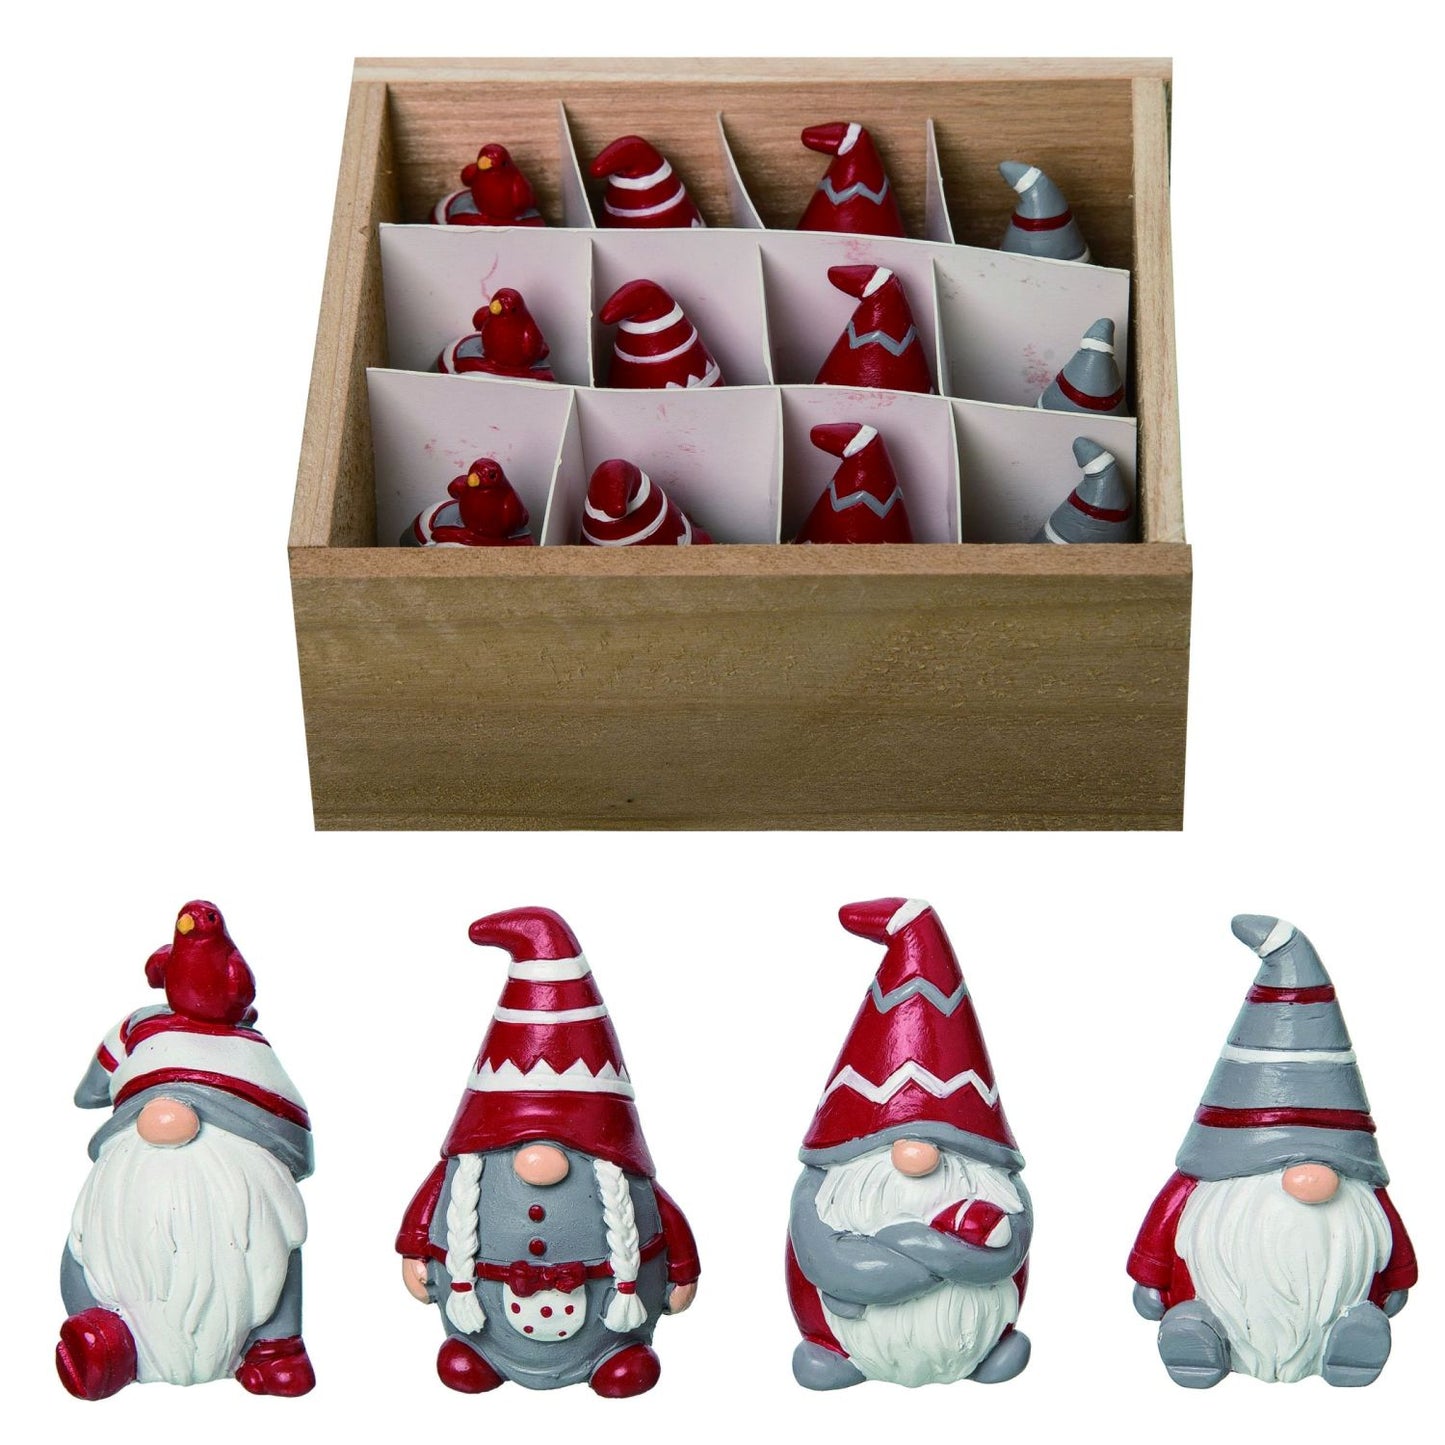 Transpac Resin Mini Gnomes In Crate Set Of 12